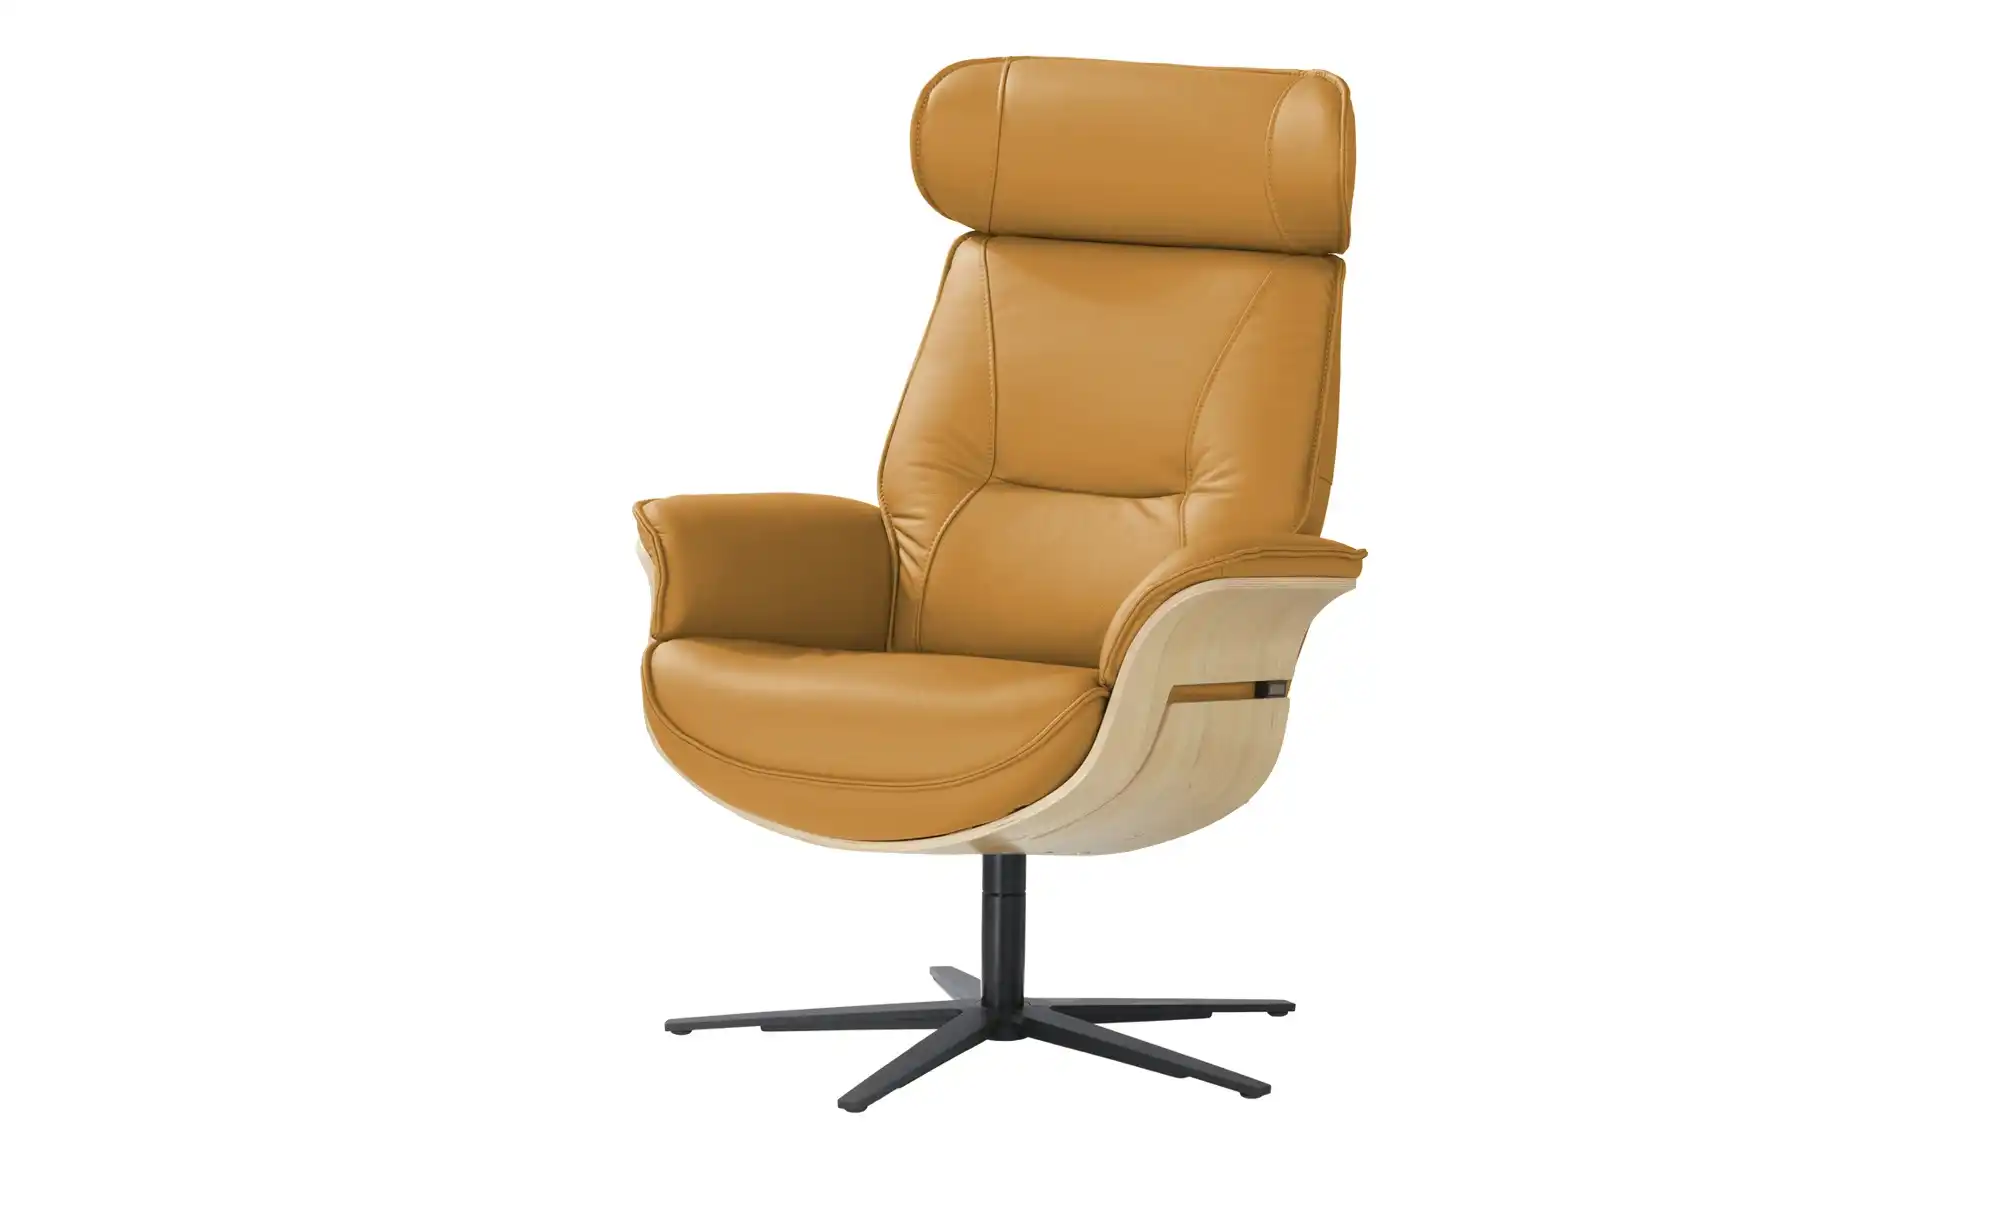 Musterring Relaxsessel MR276 ¦ orange Polstermöbel Sessel Fernsehsessel Höffner  - Onlineshop Möbel Höffner